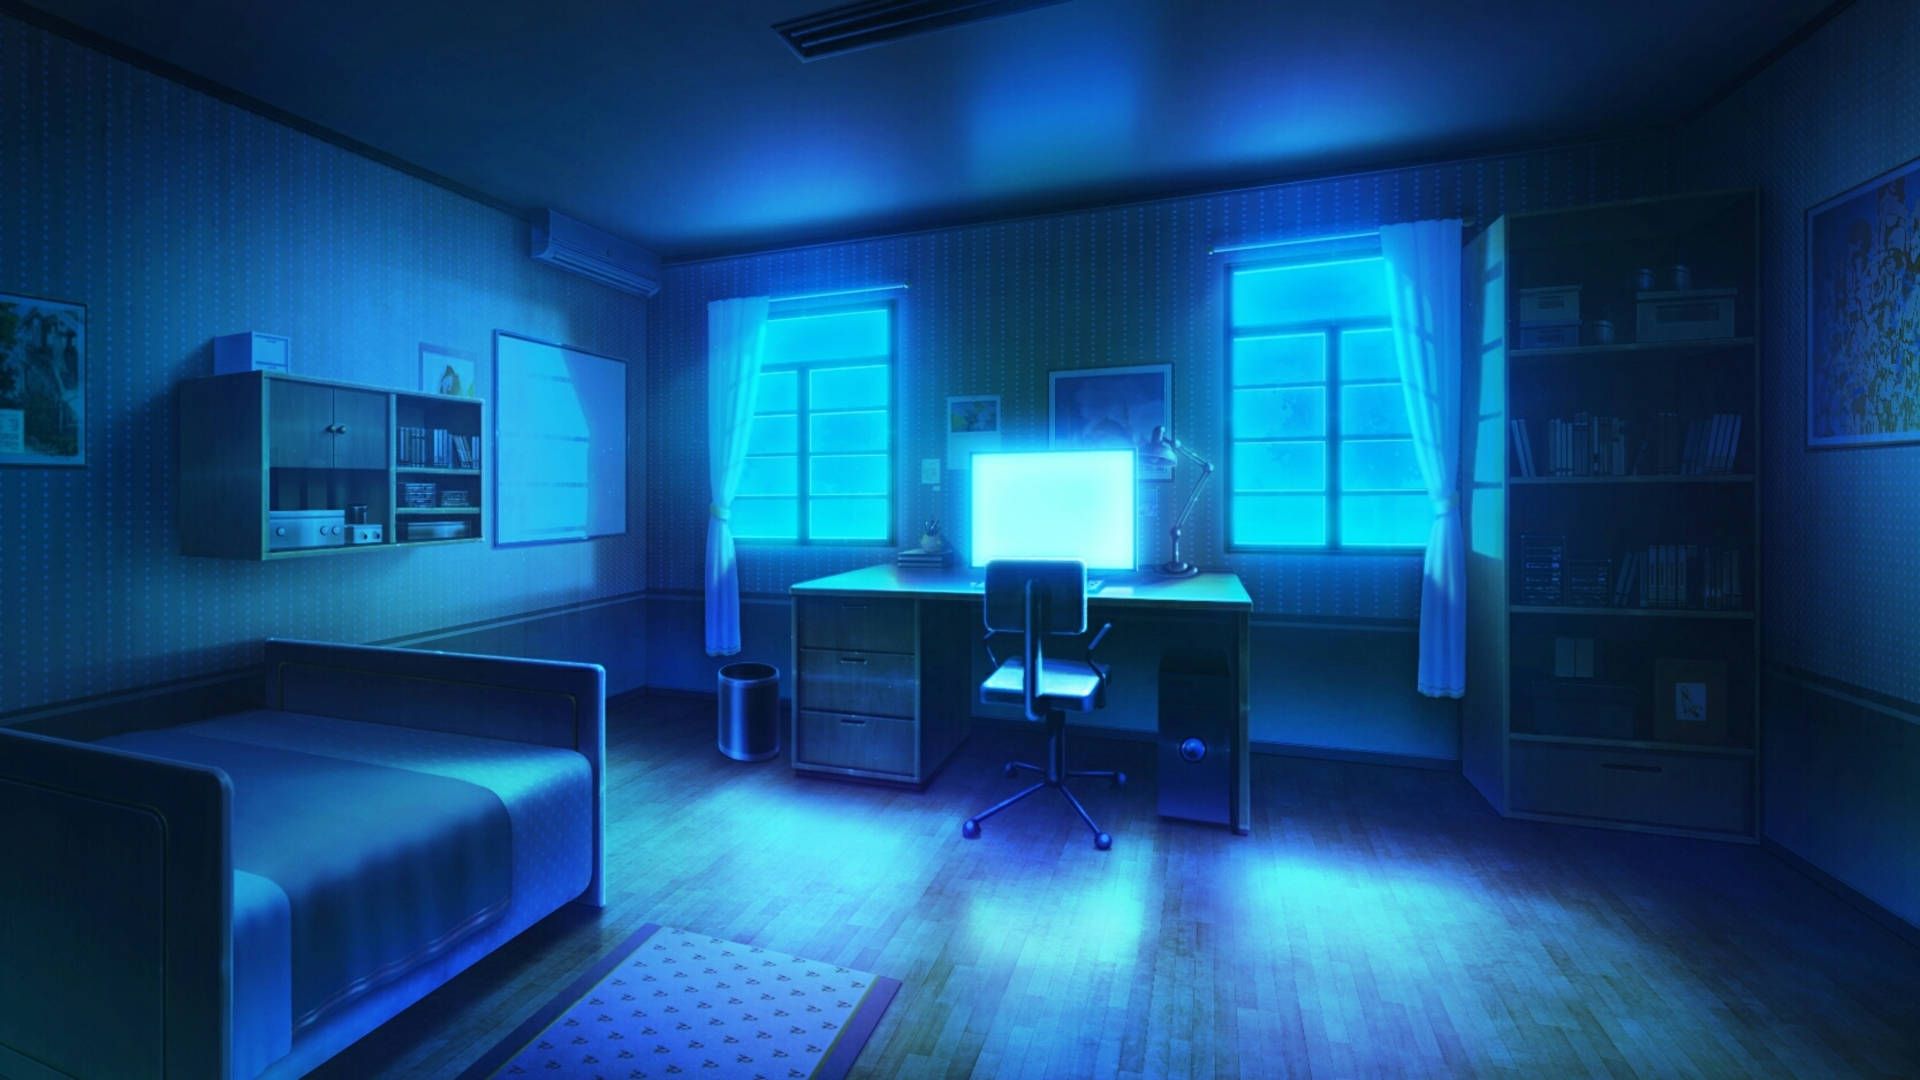 Hentai nền phòng ngủ anime màu xanh chính là sự lựa chọn hoàn hảo cho những ai yêu thích phong cách hoạt hình Nhật Bản. Gam màu xanh tươi trên nền ký hiệu anime sẽ mang đến một không gian sống đầy mơ mộng và chất lừ, giúp bạn thư giãn và tìm lại năng lượng sau một ngày làm việc vất vả.